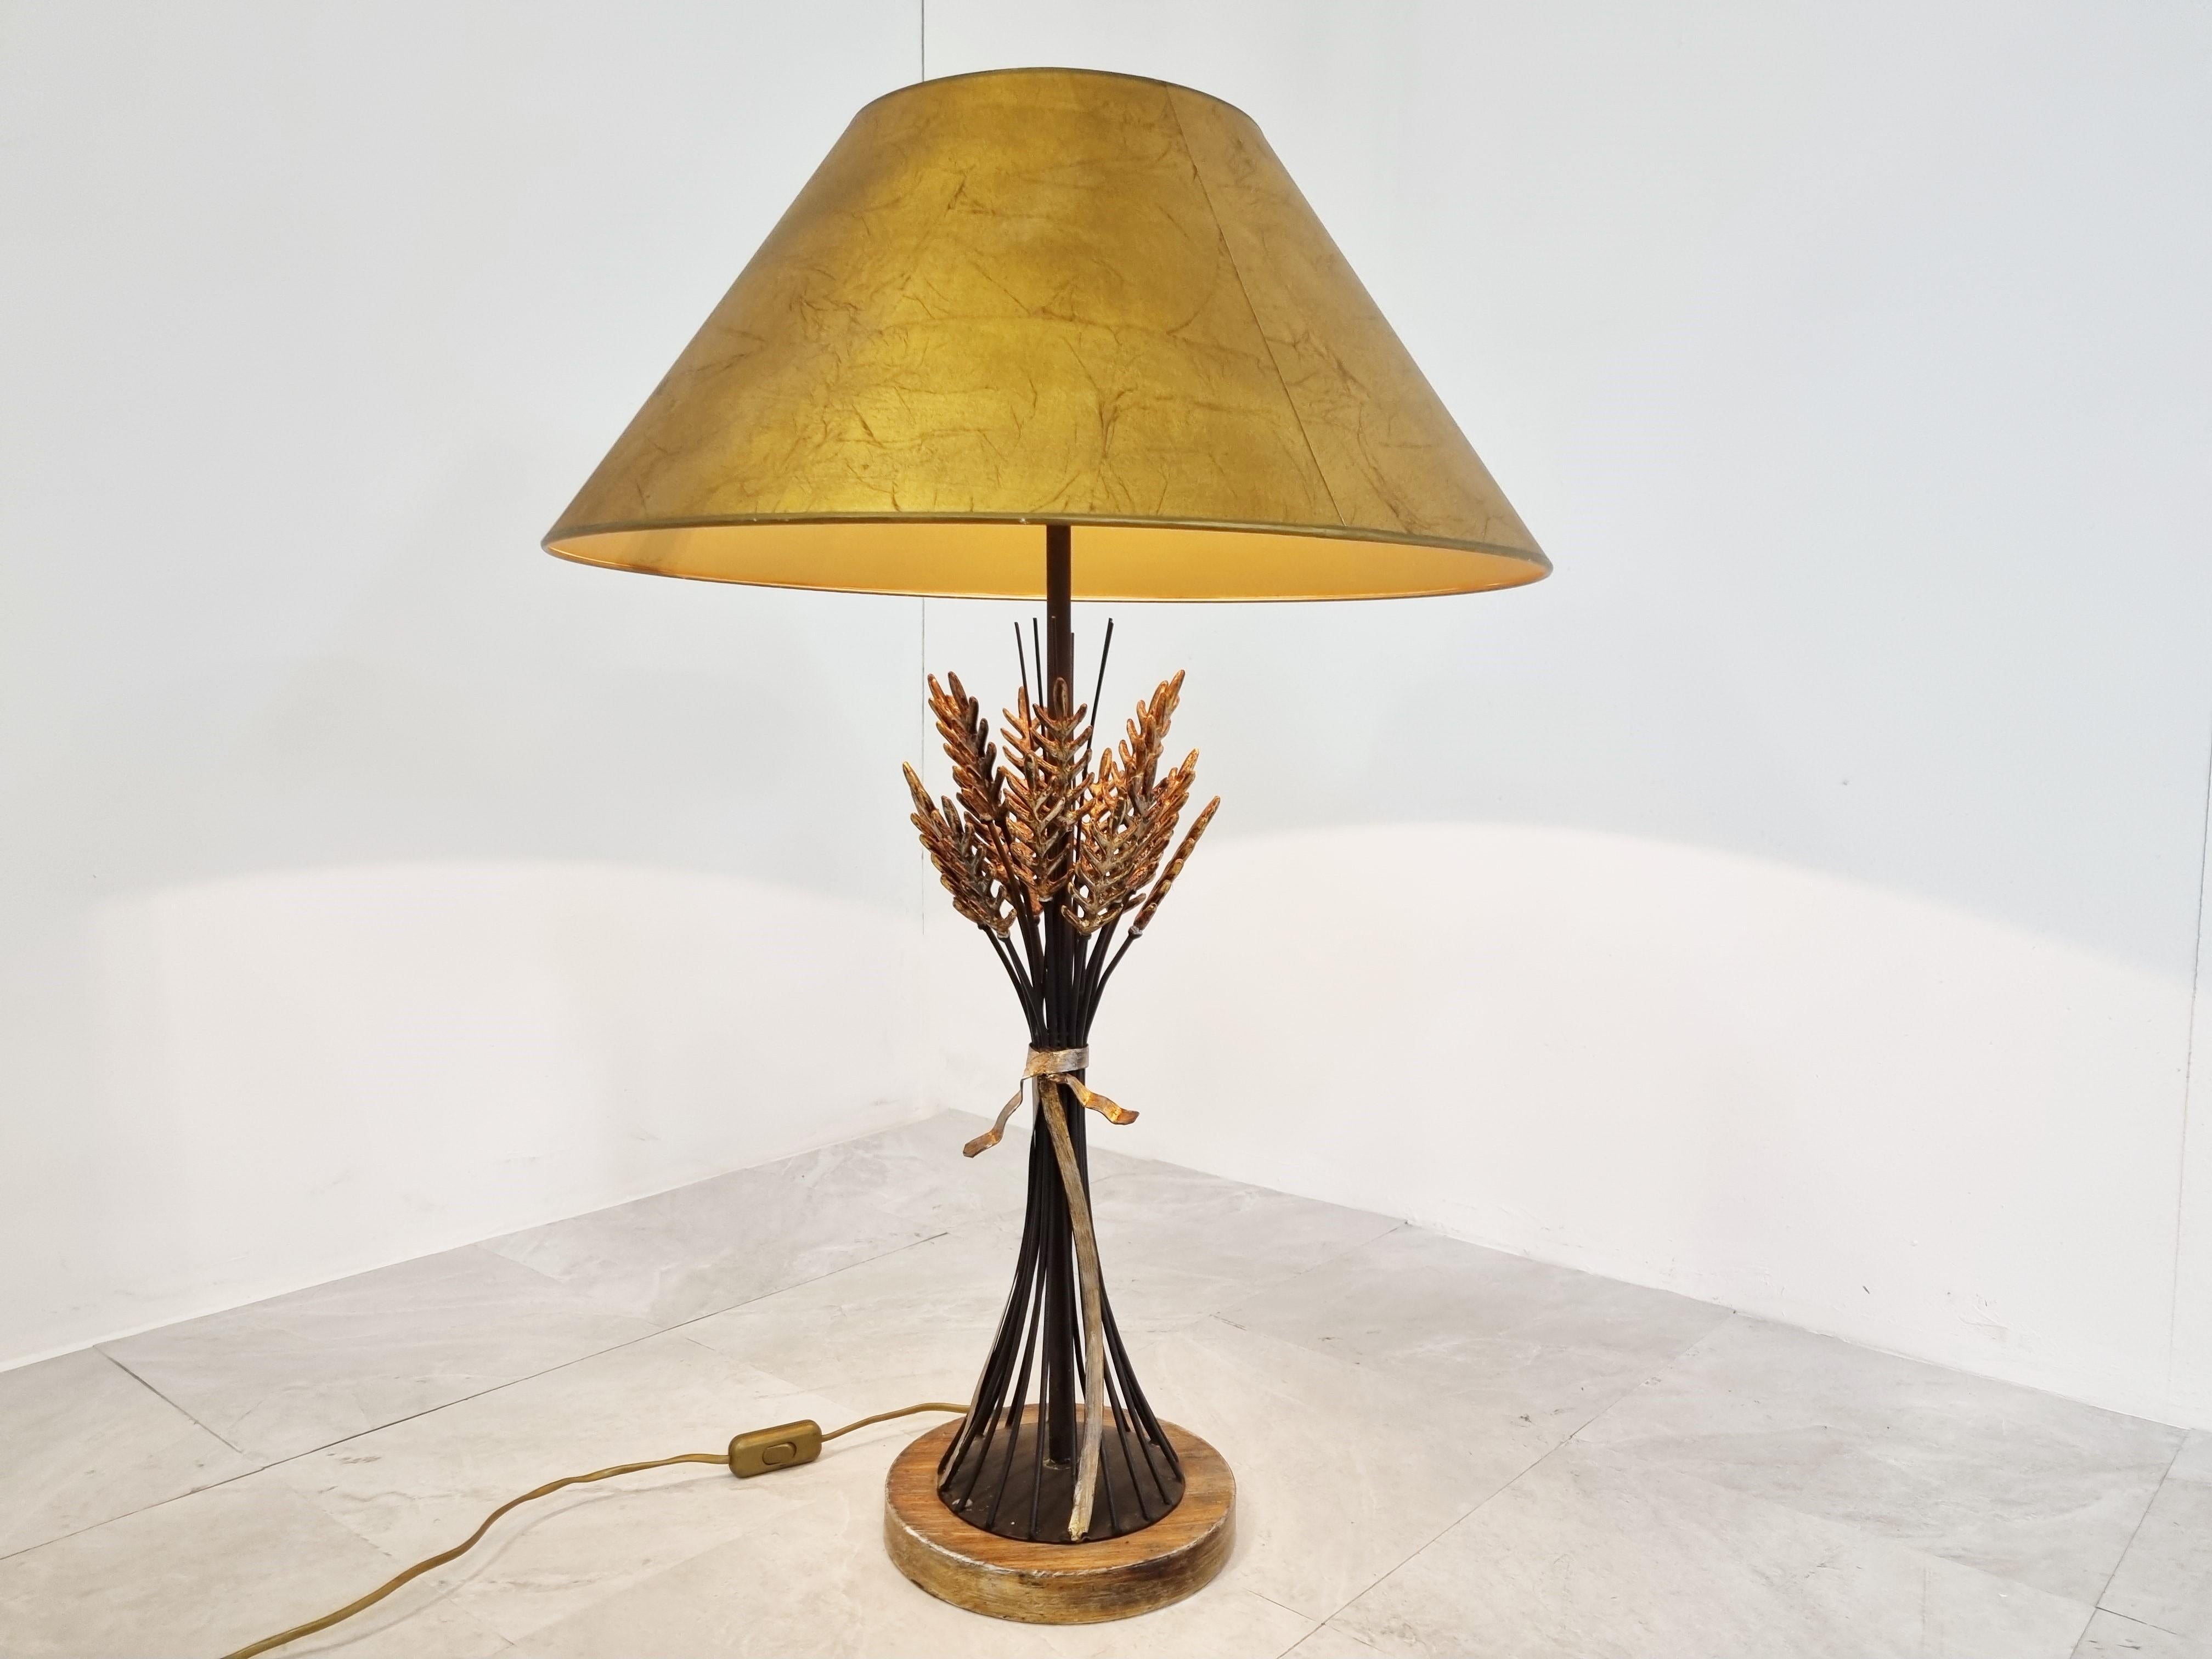 Mid-Century-Tischlampe aus vergoldetem Metall mit Weizengarben.

Blatt Weizengarbe aus Metall in Schwarz und Gold, montiert auf einem Holzsockel mit dem originalen Lampenschirm.

Geprüft und einsatzbereit mit einer normalen